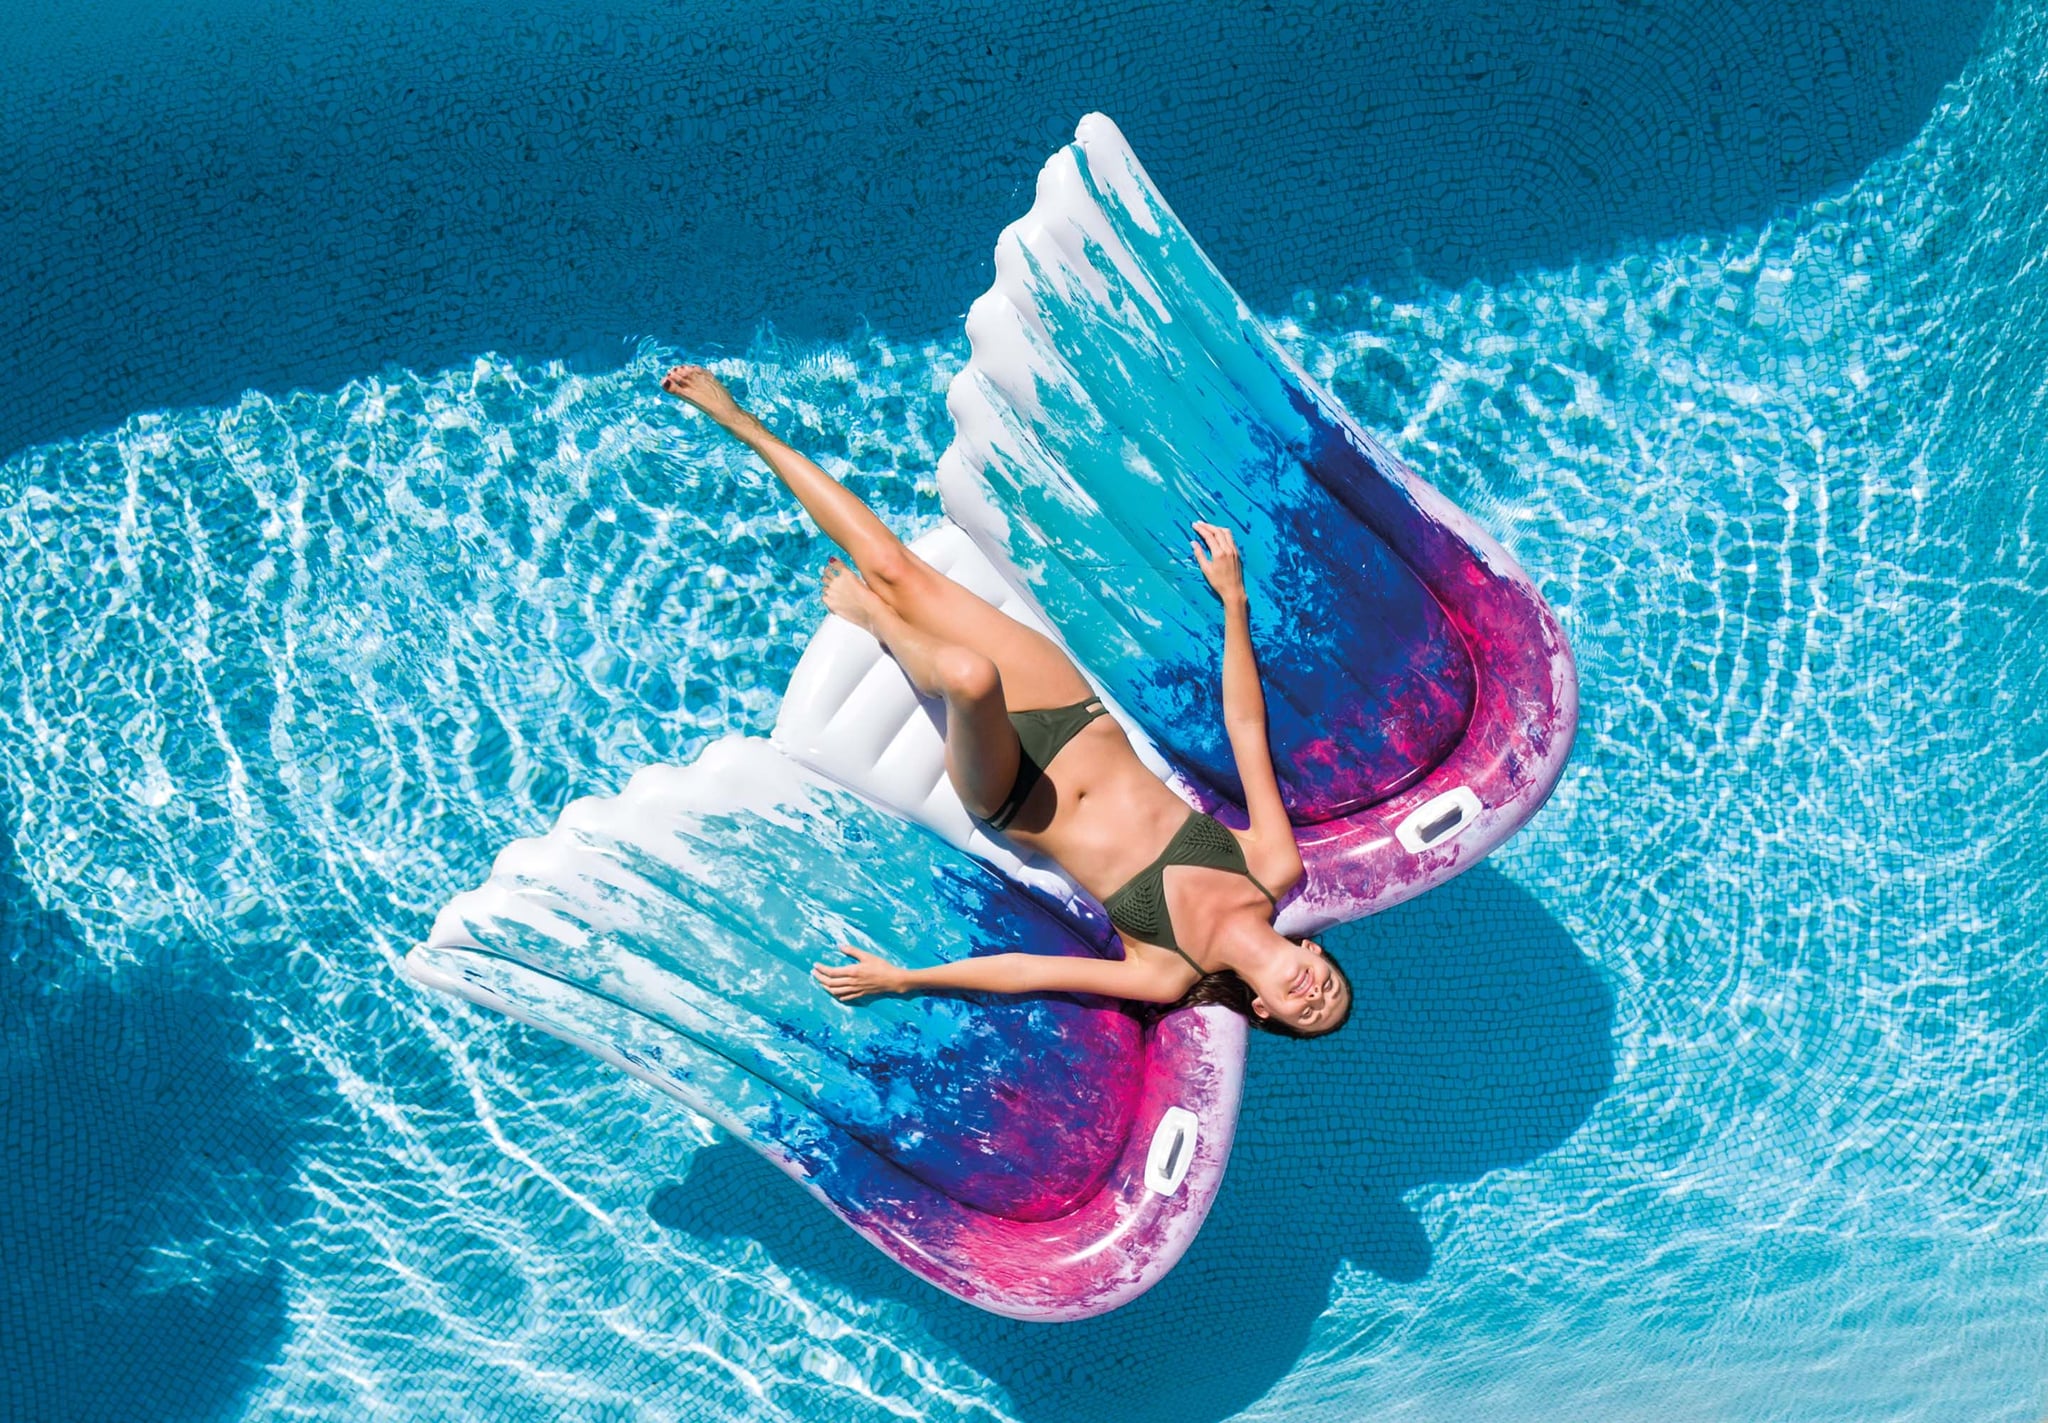 mermaid floating pool lounge